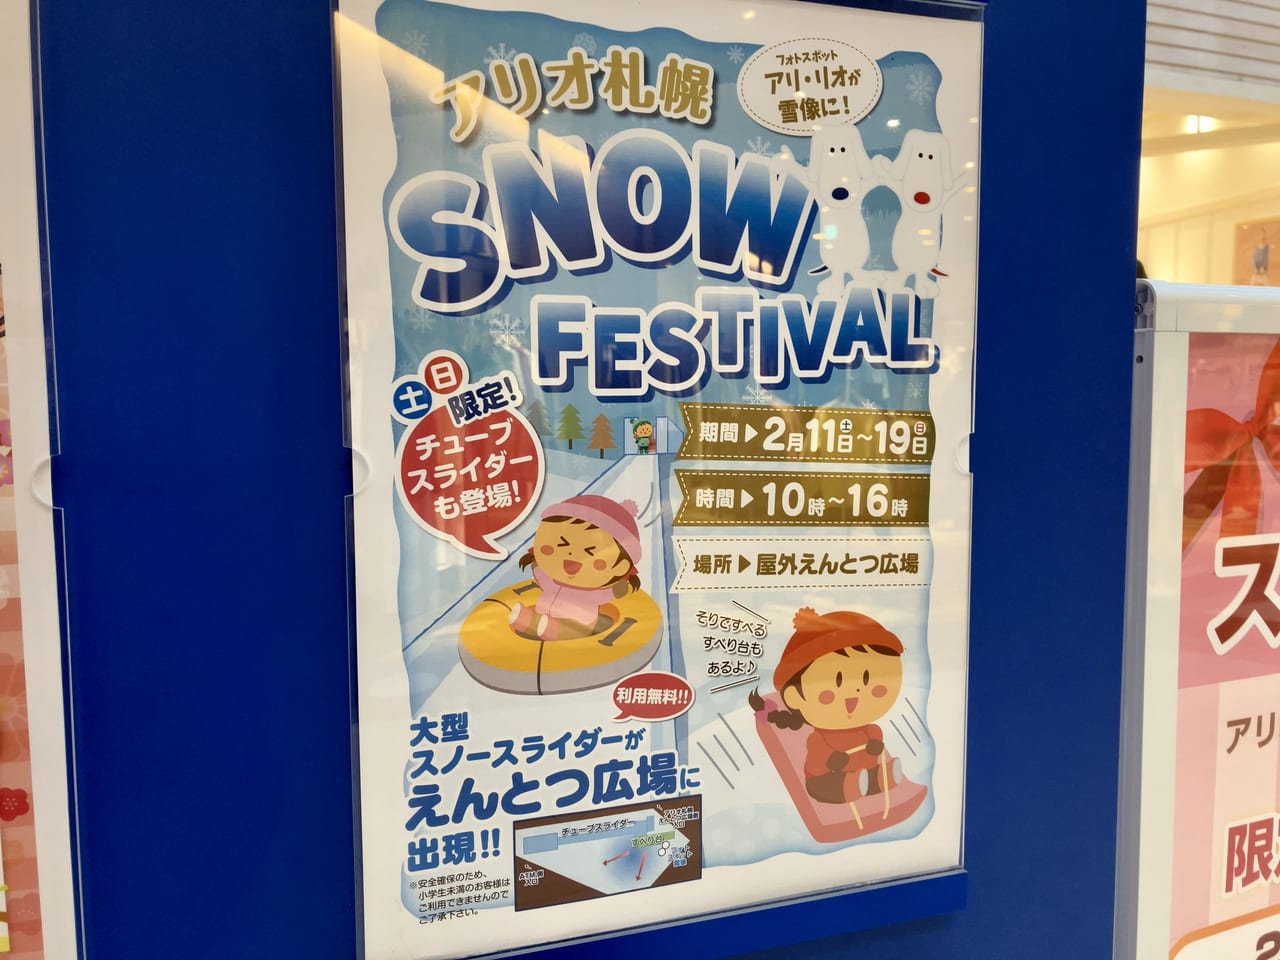 アリオ札幌の「SNOW FESTIVAL」が好評につき期間延長が決定したよ。まだ行ってない人は急いで行ってみて。